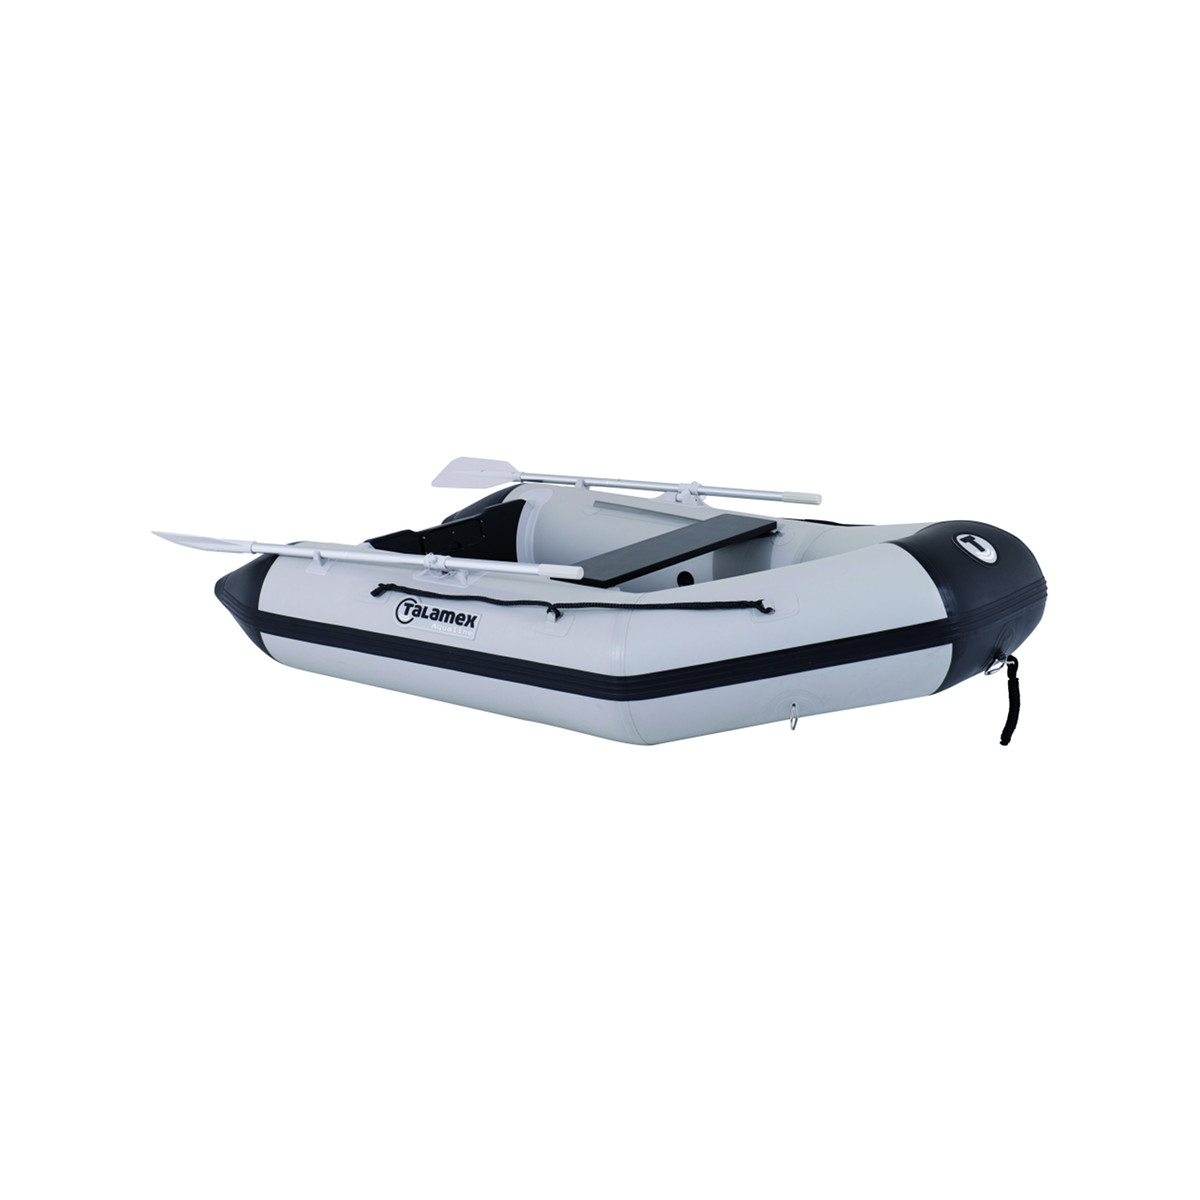 Talamex Aqualine QLX270 opblaasbare rubberboot QLX270 met aluminium bodem, lengte 2,70m, grijs